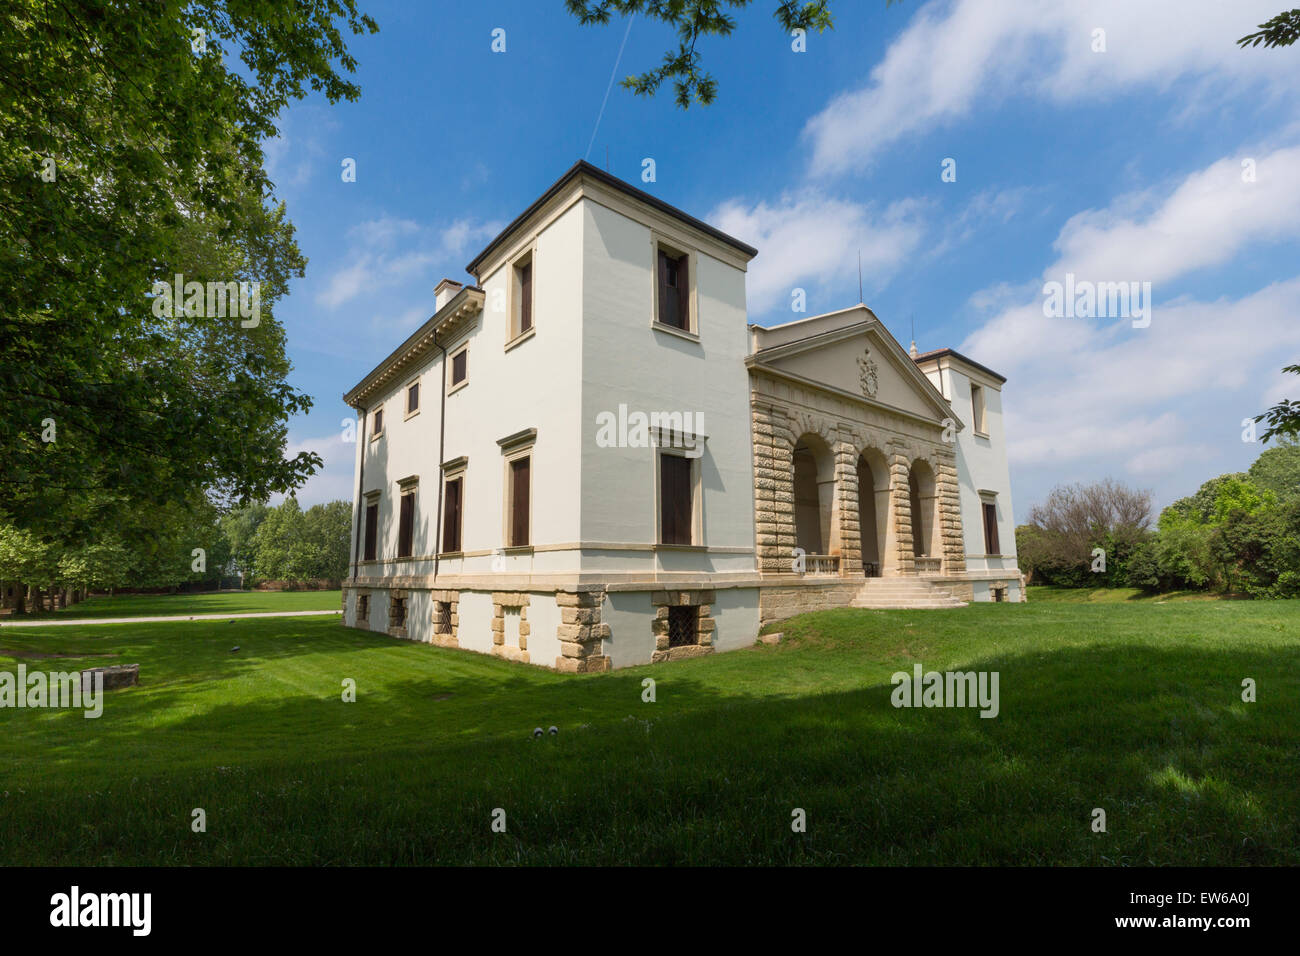 La Villa Pisani Bonetti est une villa patricienne conçue par Andrea Palladio, situé à Bagnolo, un hameau de la commune de Lonigo dans la région Vénétie en Italie. Banque D'Images